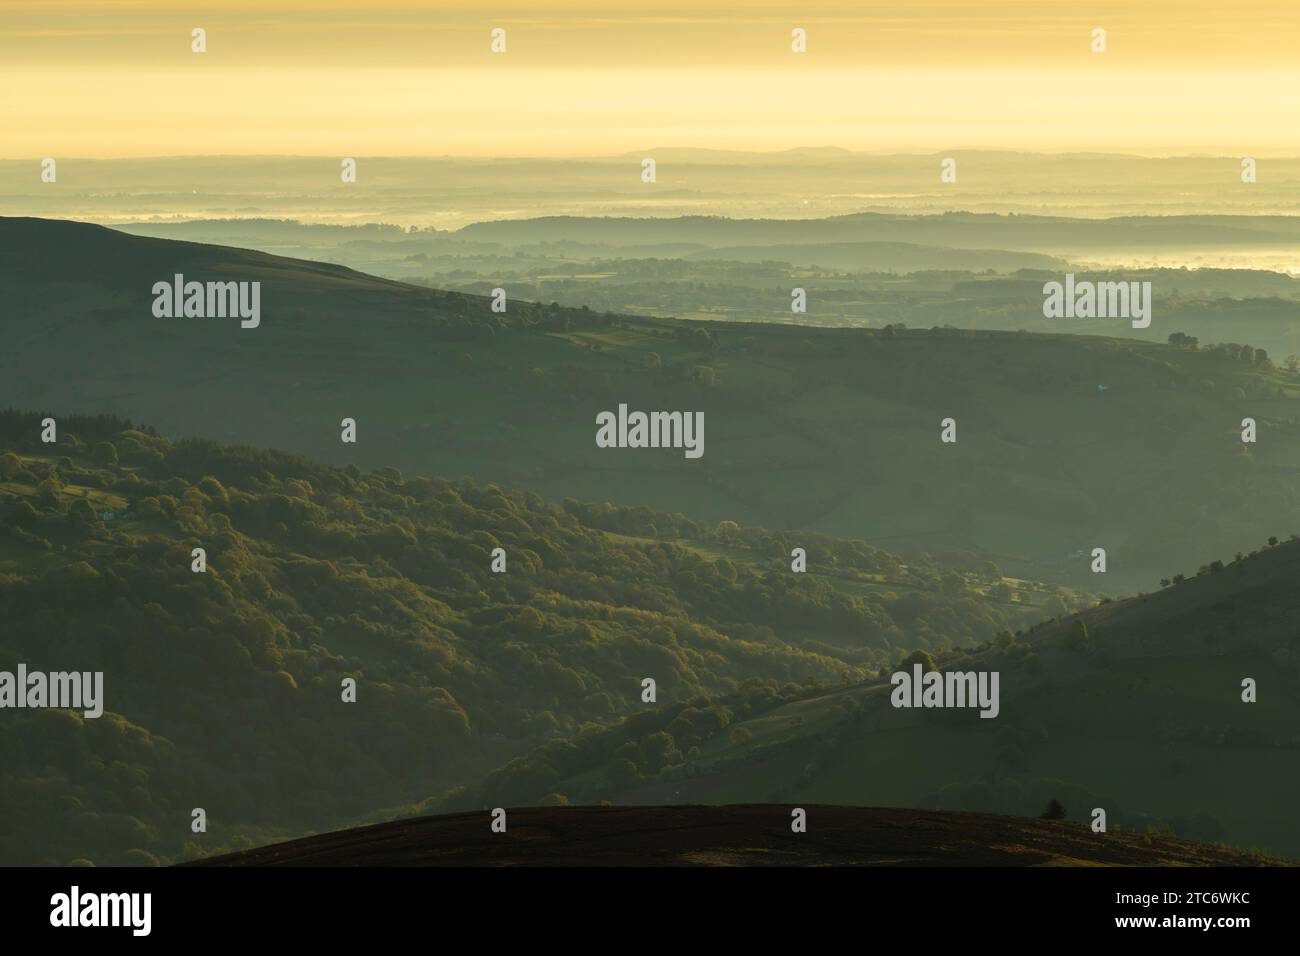 Alba su Bannau Brycheiniog, precedentemente nota come Brecon Beacons dalla cima del Pan di zucchero, Abergavenny, Powys, Galles, Regno Unito. Molla ( Foto Stock